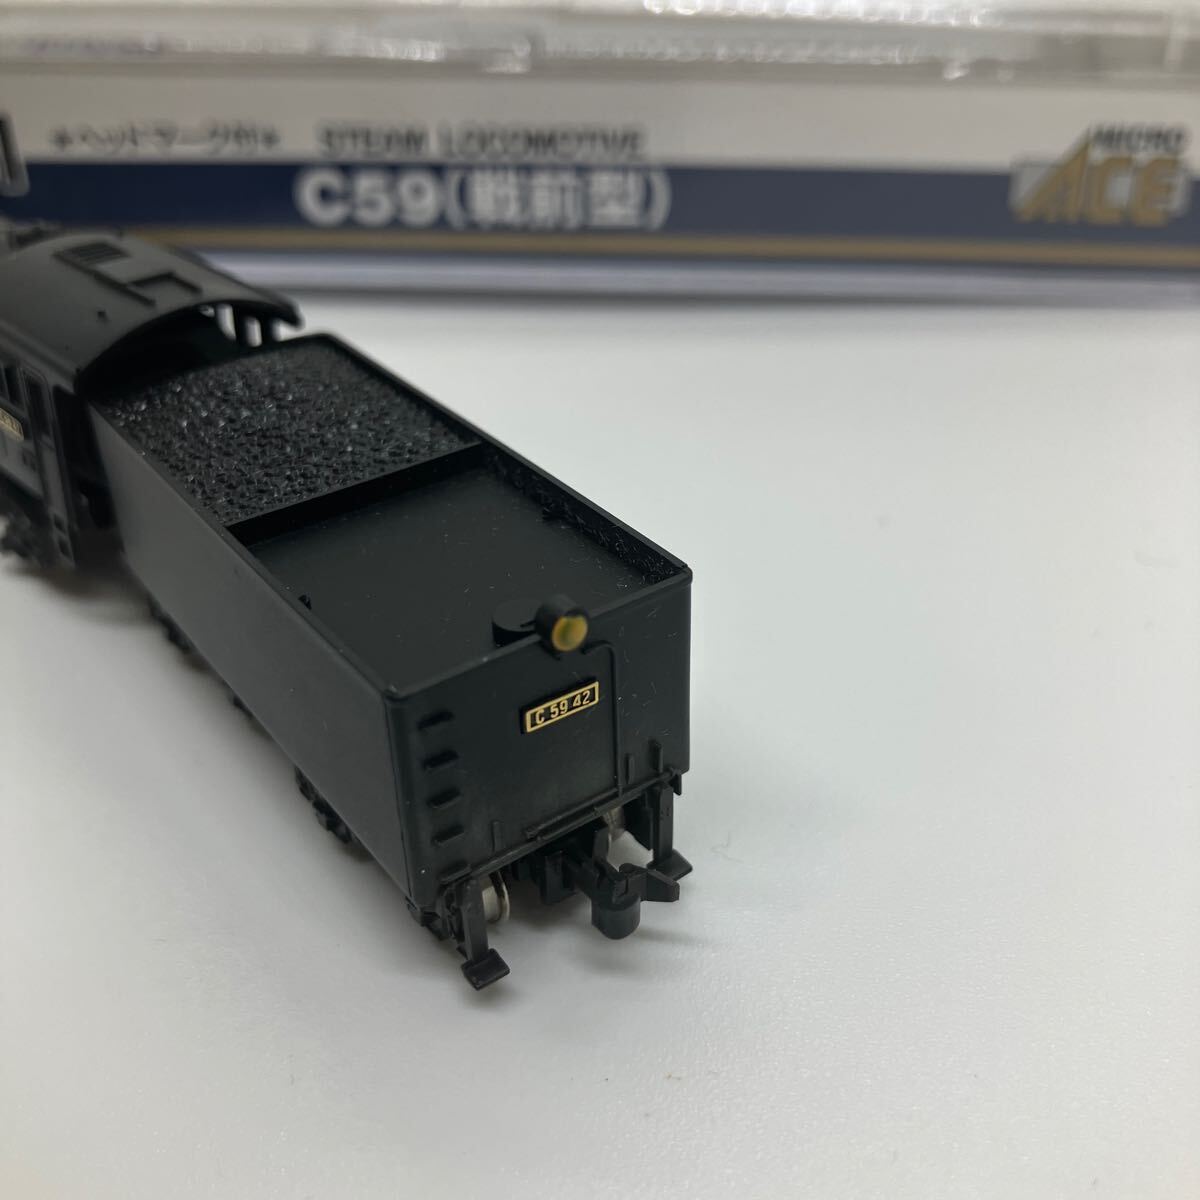 【E/A214170】MICRO ACE マイクロエース 鉄道模型 C59(戦前型) A9601 機関車 ※ケースひび割れあり_画像5